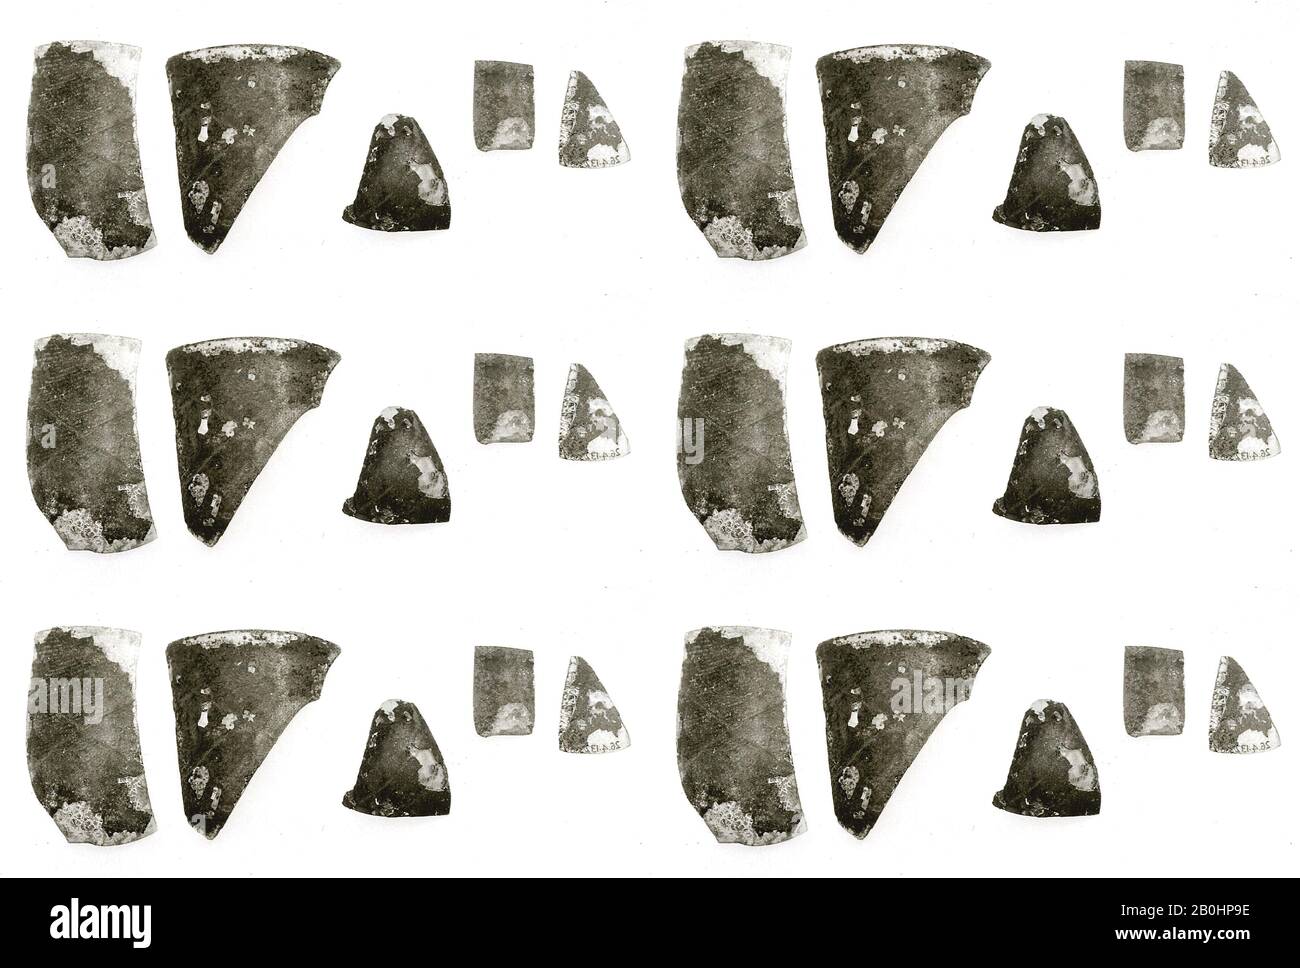 Vaso, frammenti, Periodo meroitico, Data 270 a.C.-d.C. 320, Da Nubia (Sudan), Lower Nubia, Faras, Cemetery 1, Grave 1504, Università Degli Scavi Di Oxford A Nubia 1910-1912, Glass Foto Stock